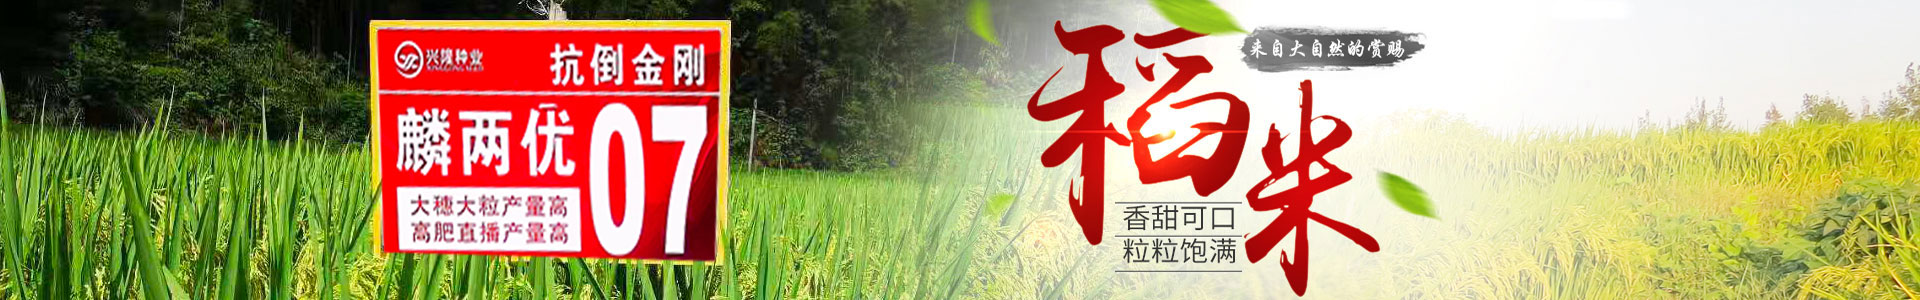 湖南凯发·K8下载种业有限公司_长沙稻谷种植与销售|长沙农作物品种的选育